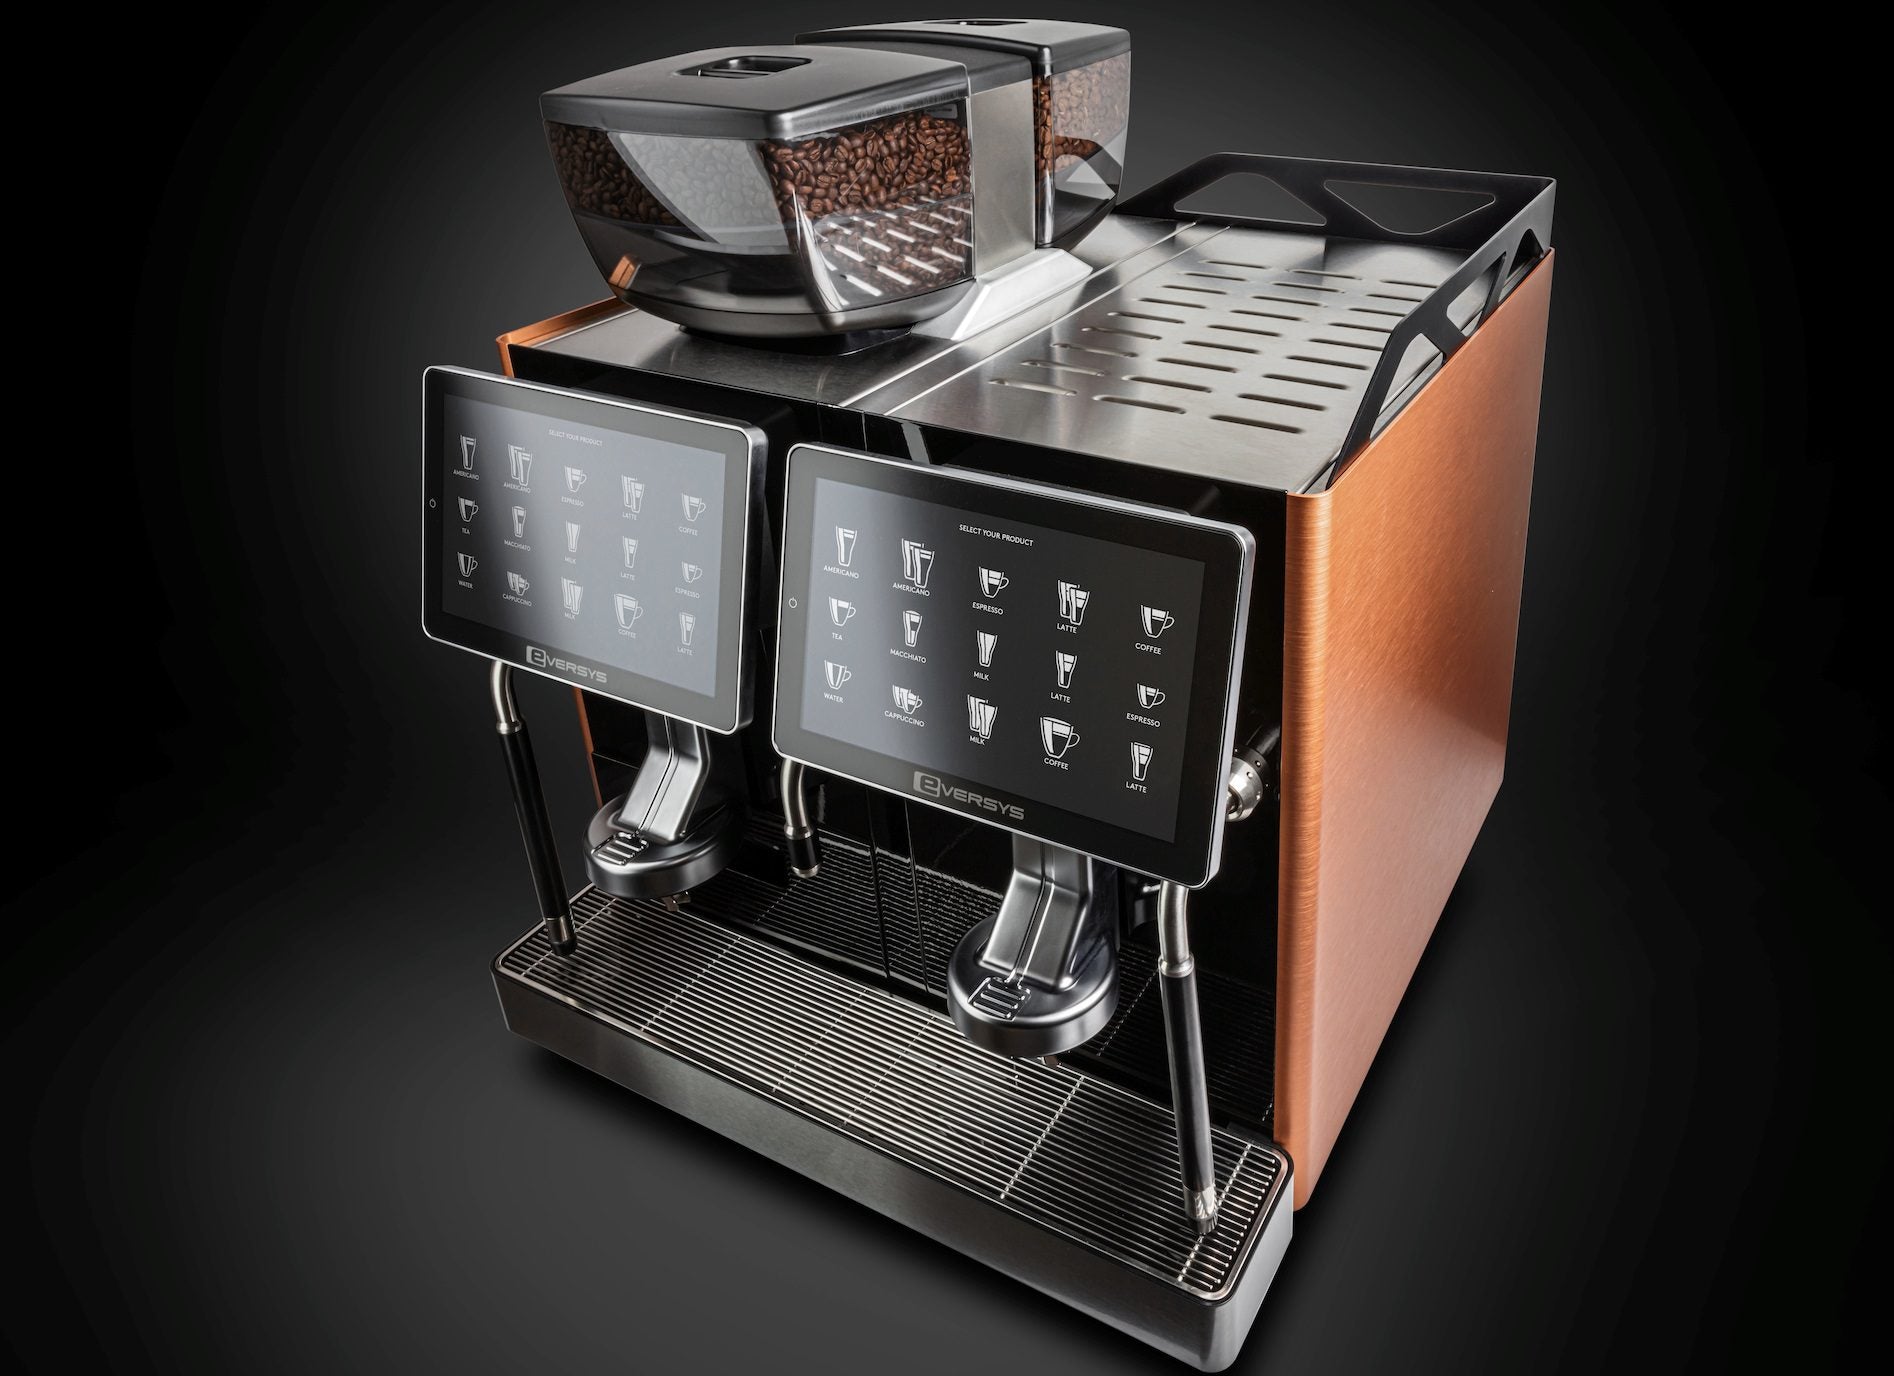 Eversys E'4s/ST - Super Automatic Espresso Machine